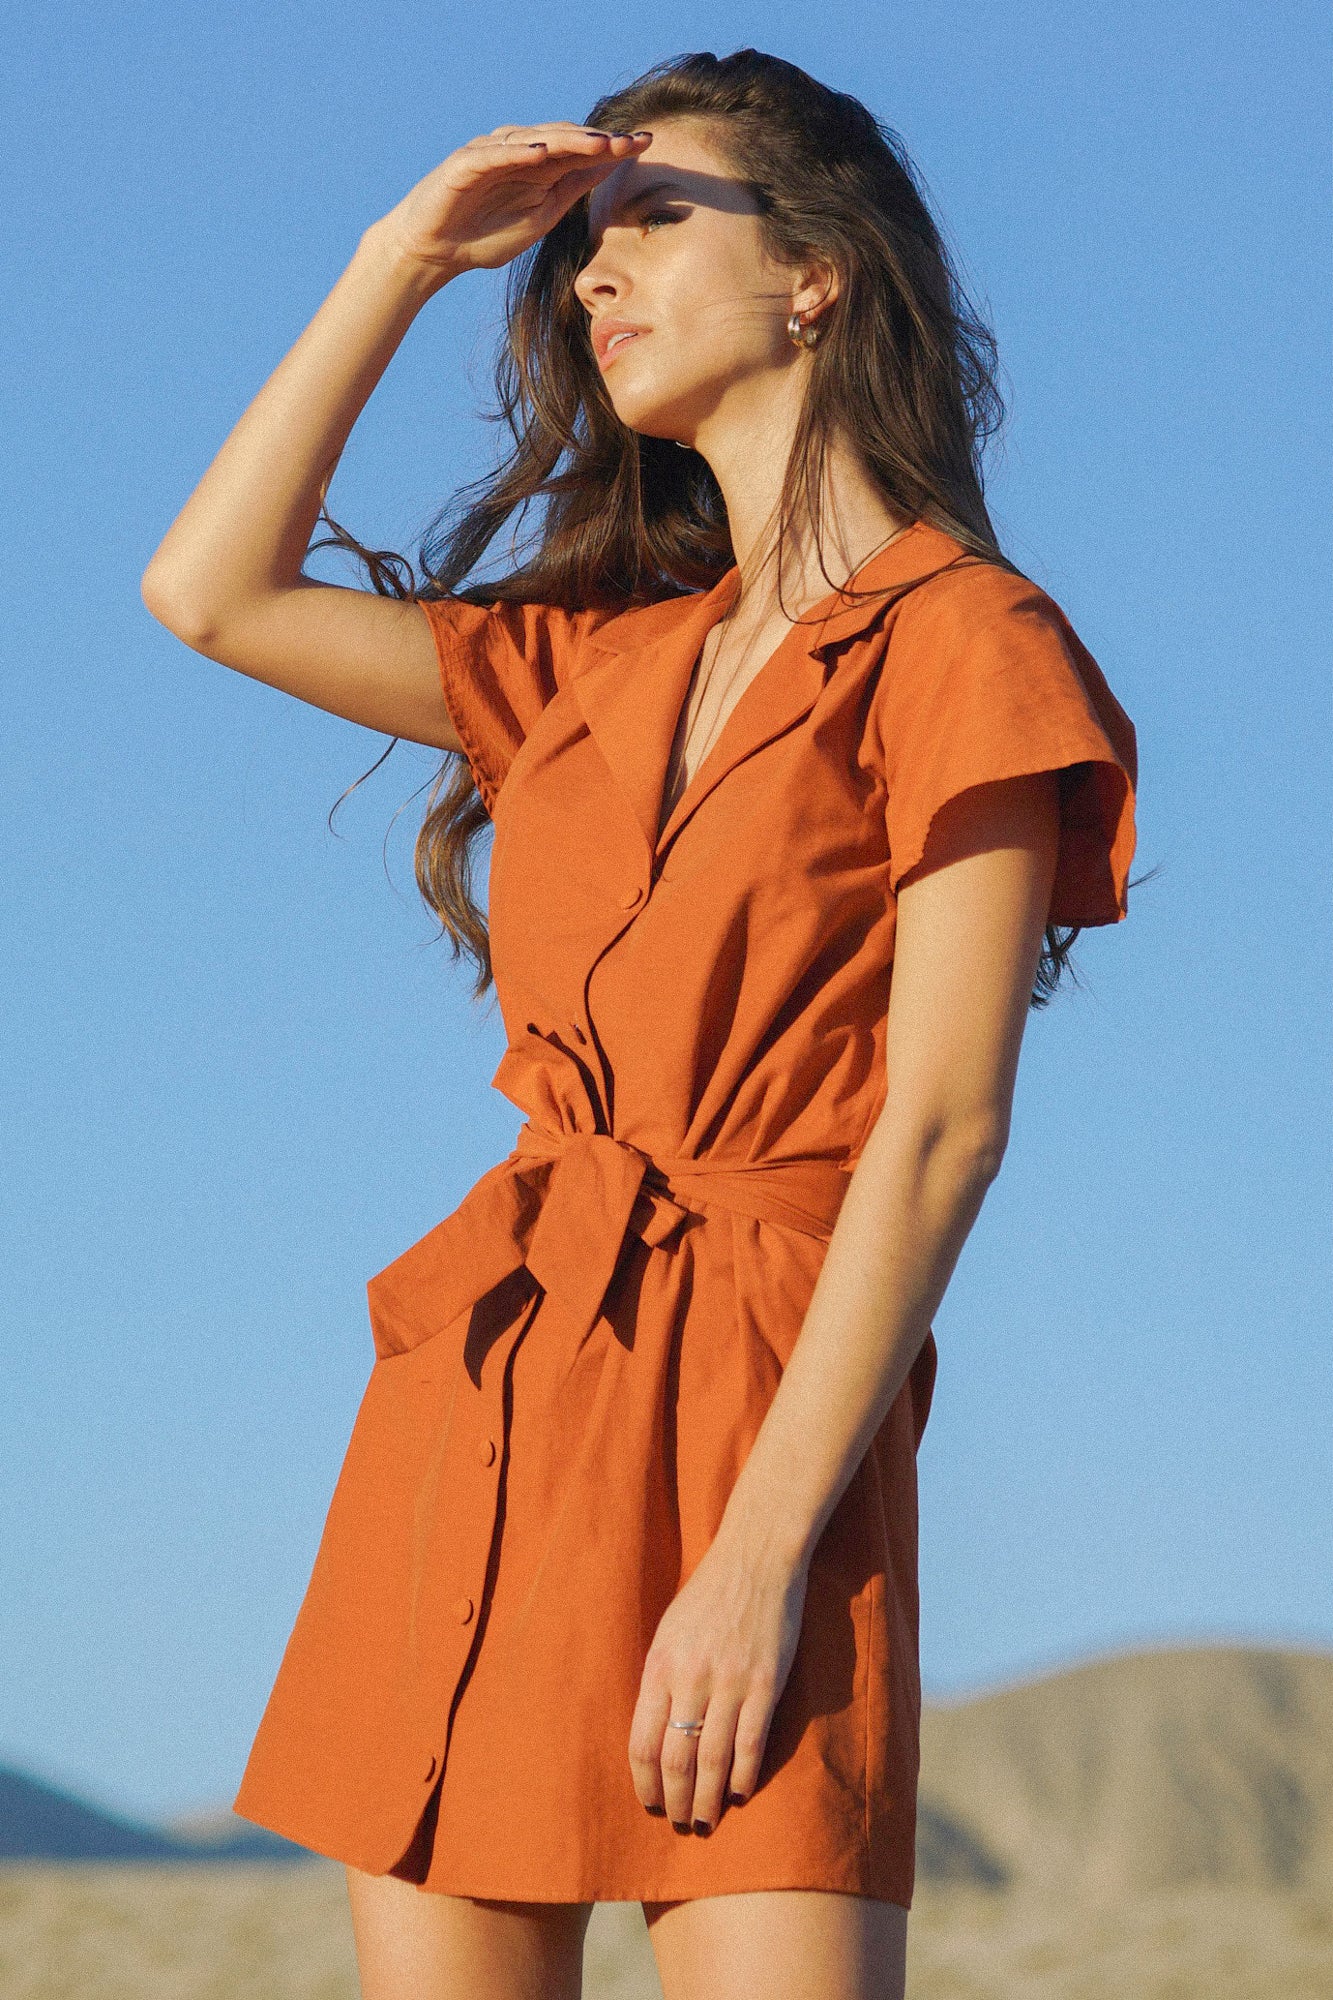 Robe orange/irisé portée par une femme au milieu d'un désert aride et avec le ciel bleu en arrière plan. La robe est courte, de couleur orange, cintrée par une ceinture en tissu à la taille, et comportant des boutons recouverts de tissus sur le devant pour la refermer. Les manches sont courts et simples, et le col de la robe est un col tailleur.